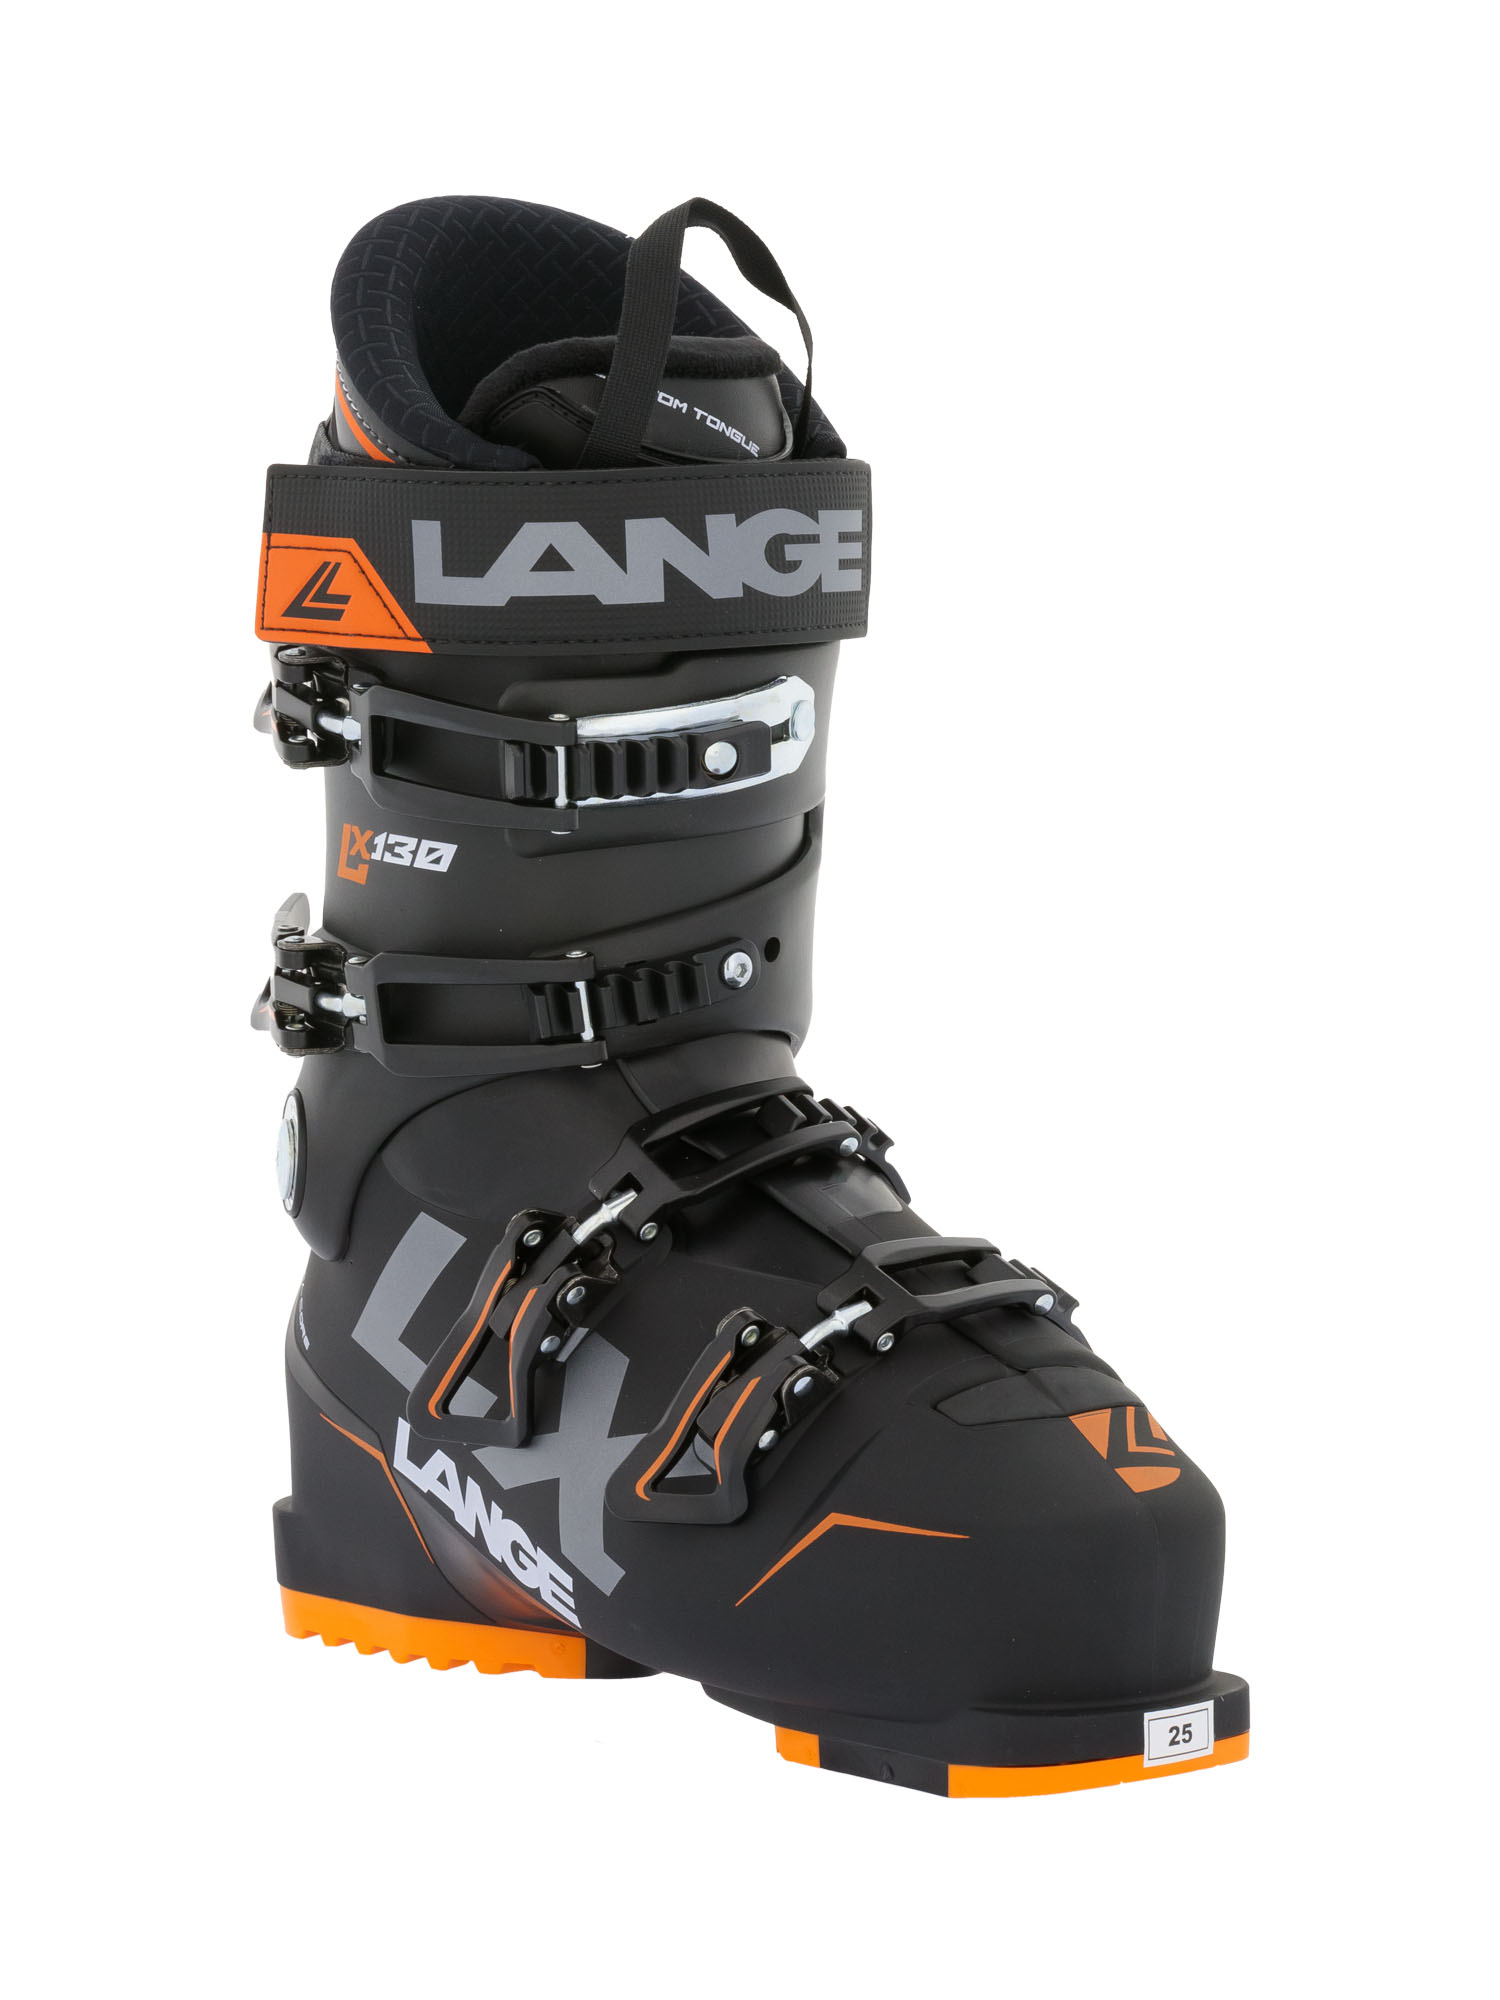 Горнолыжные ботинки LANGE LX 130 Black - Orange — купить недорого, цены вмагазине КАНТ